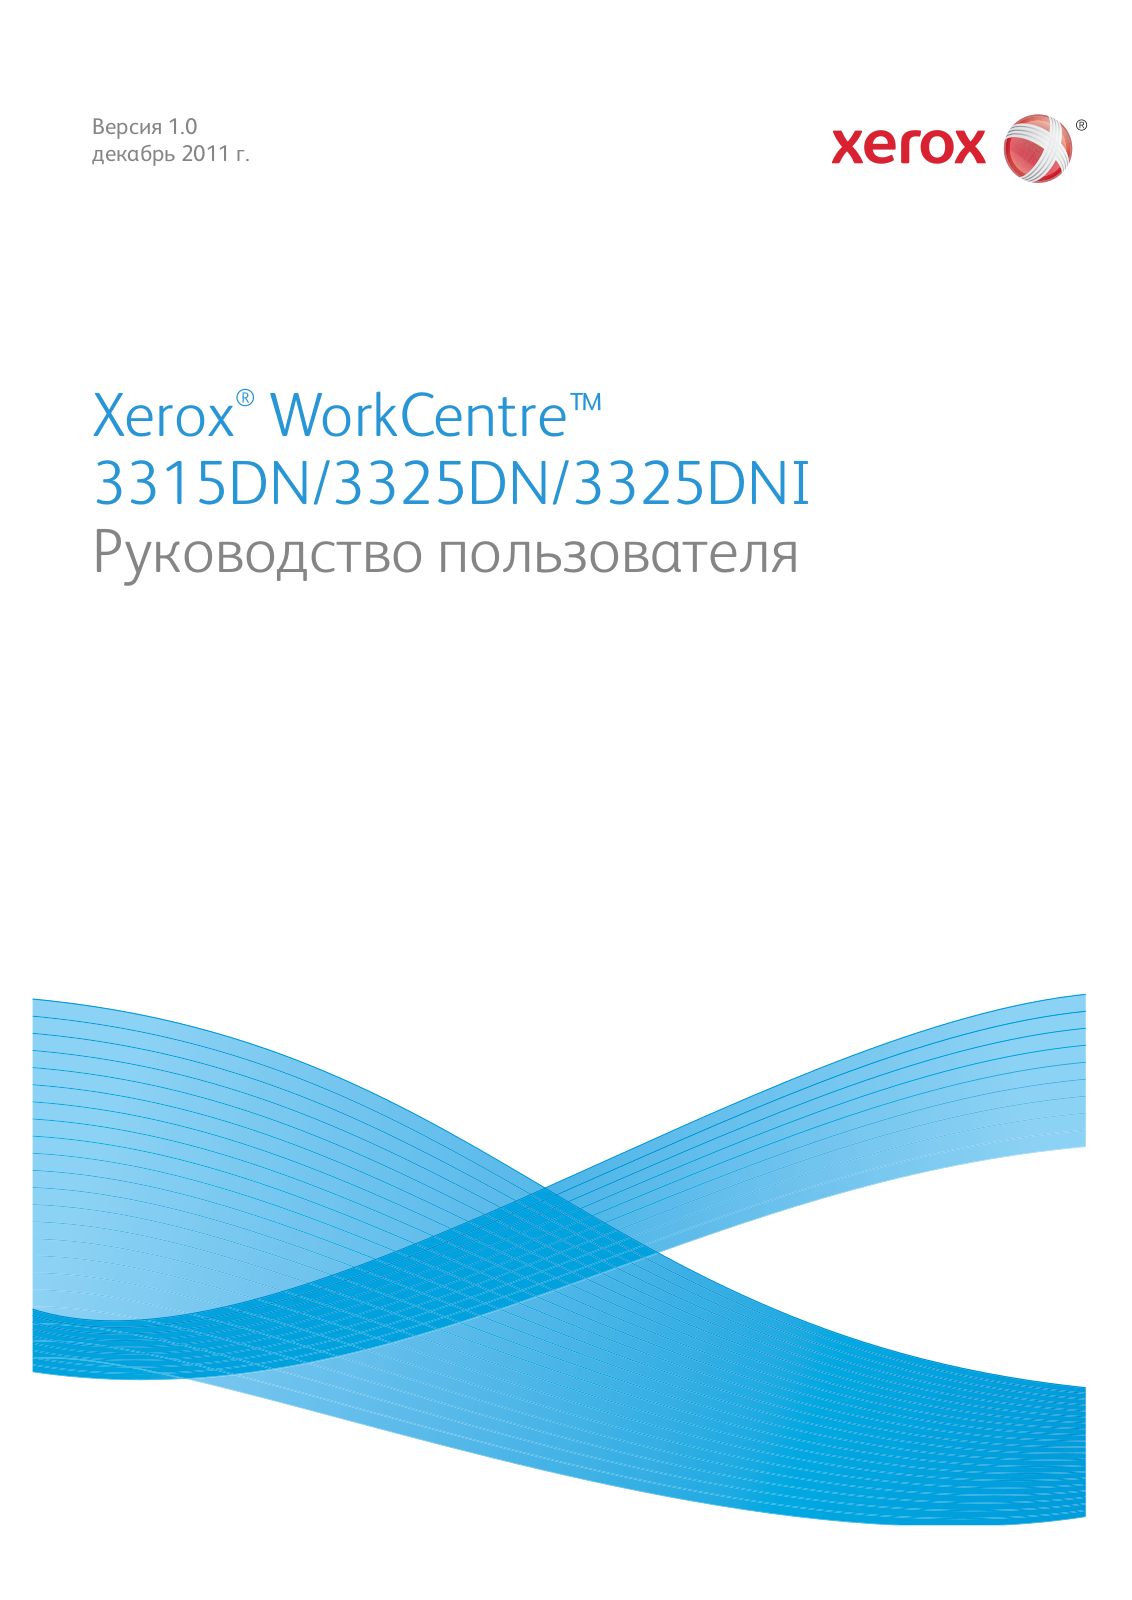 Xerox WorkCentre 3315DN, WorkCentre 3325DN, WorkCentre 3325DNI User Manual